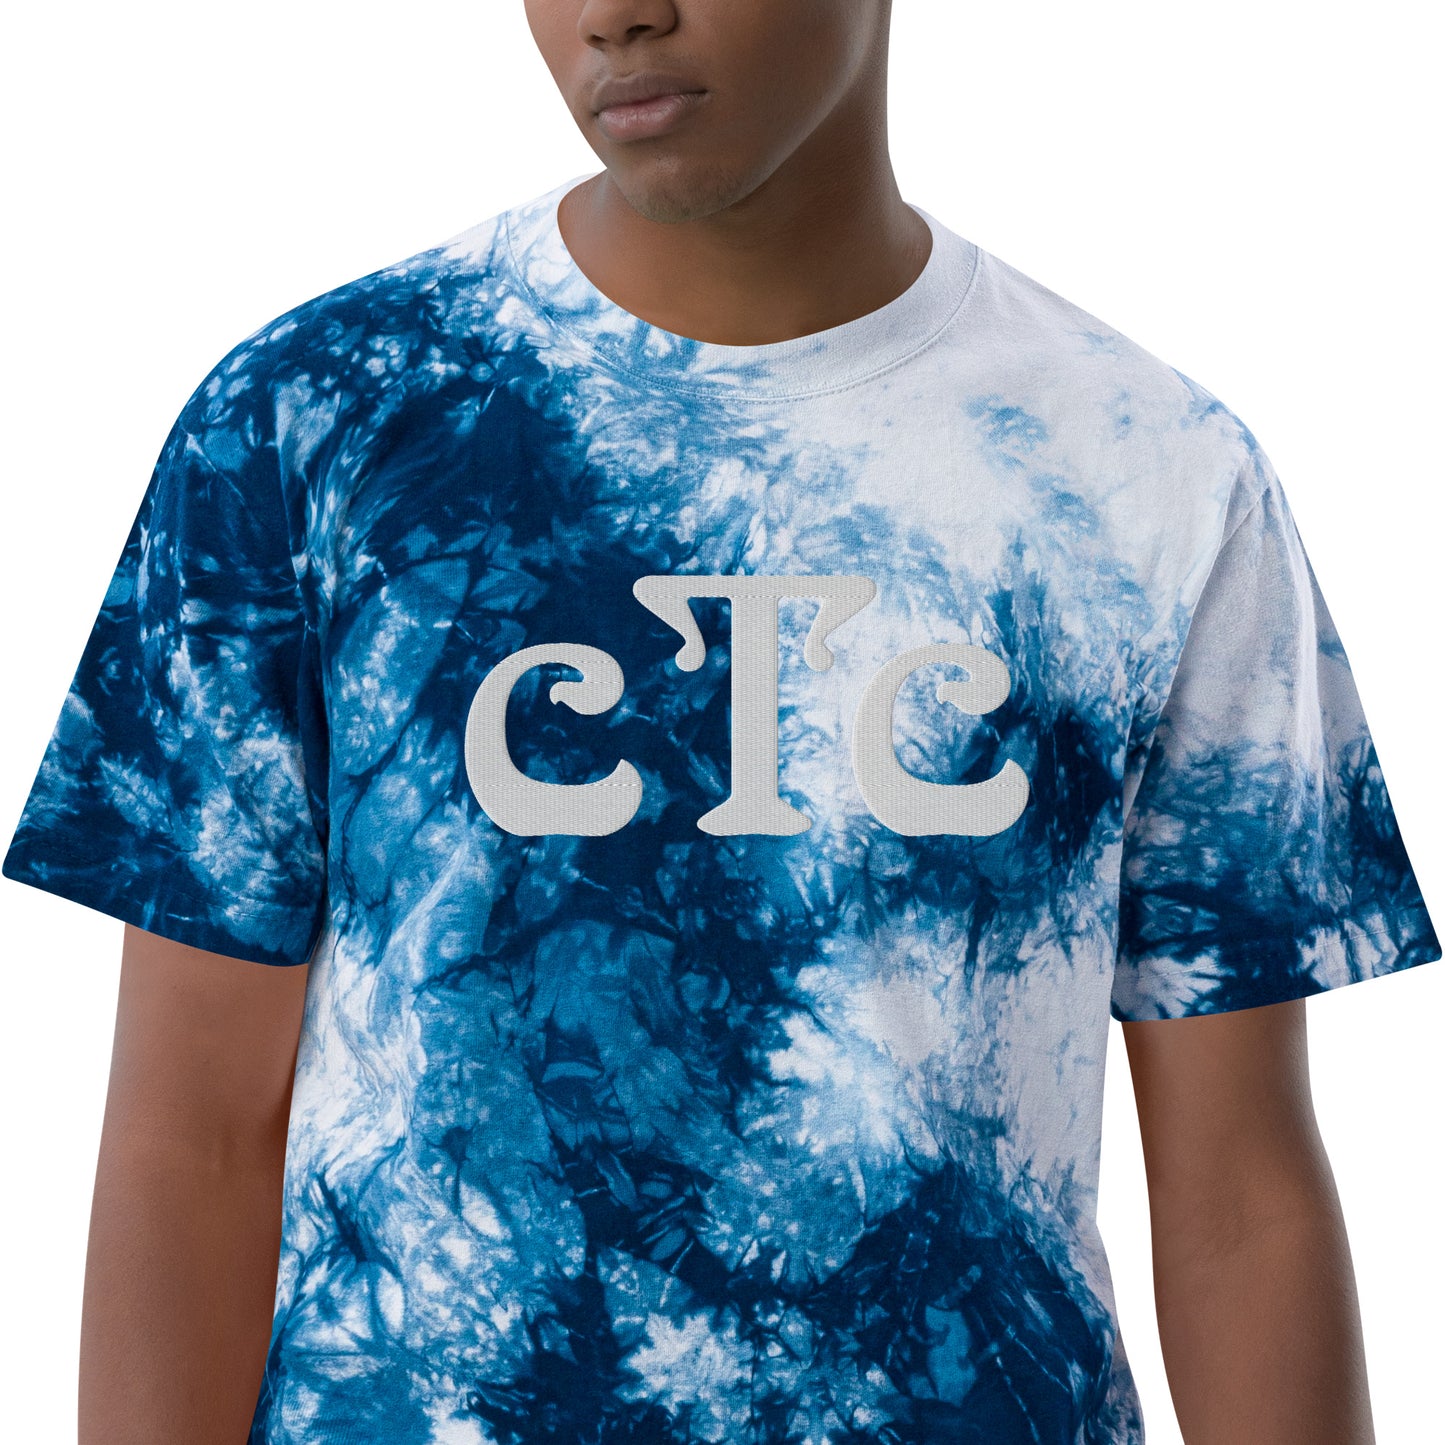 cTc tie-dye t-shirt